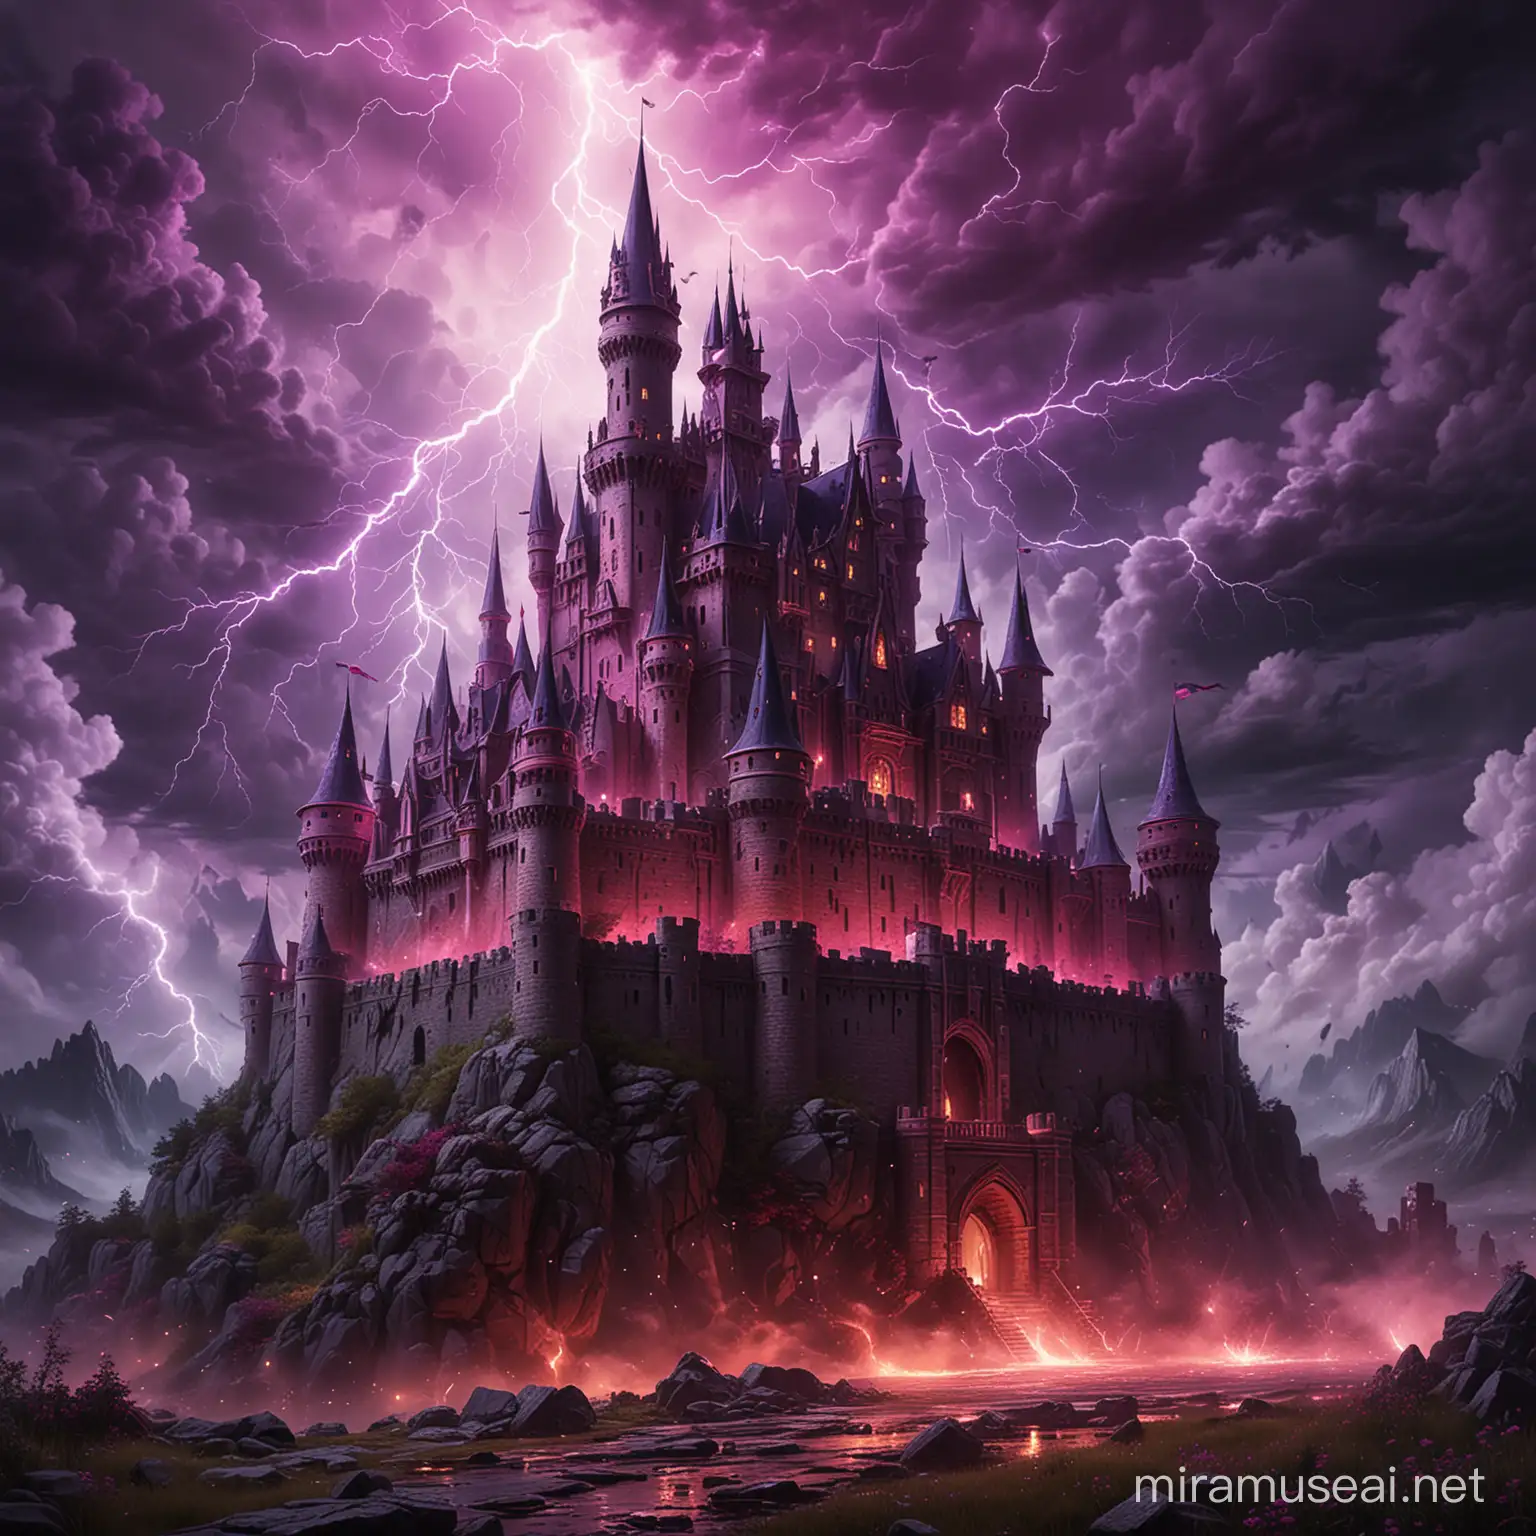 castello horror notturno con lampi e tuoni sullo sfondo, colori tendenti al viola e fucsia